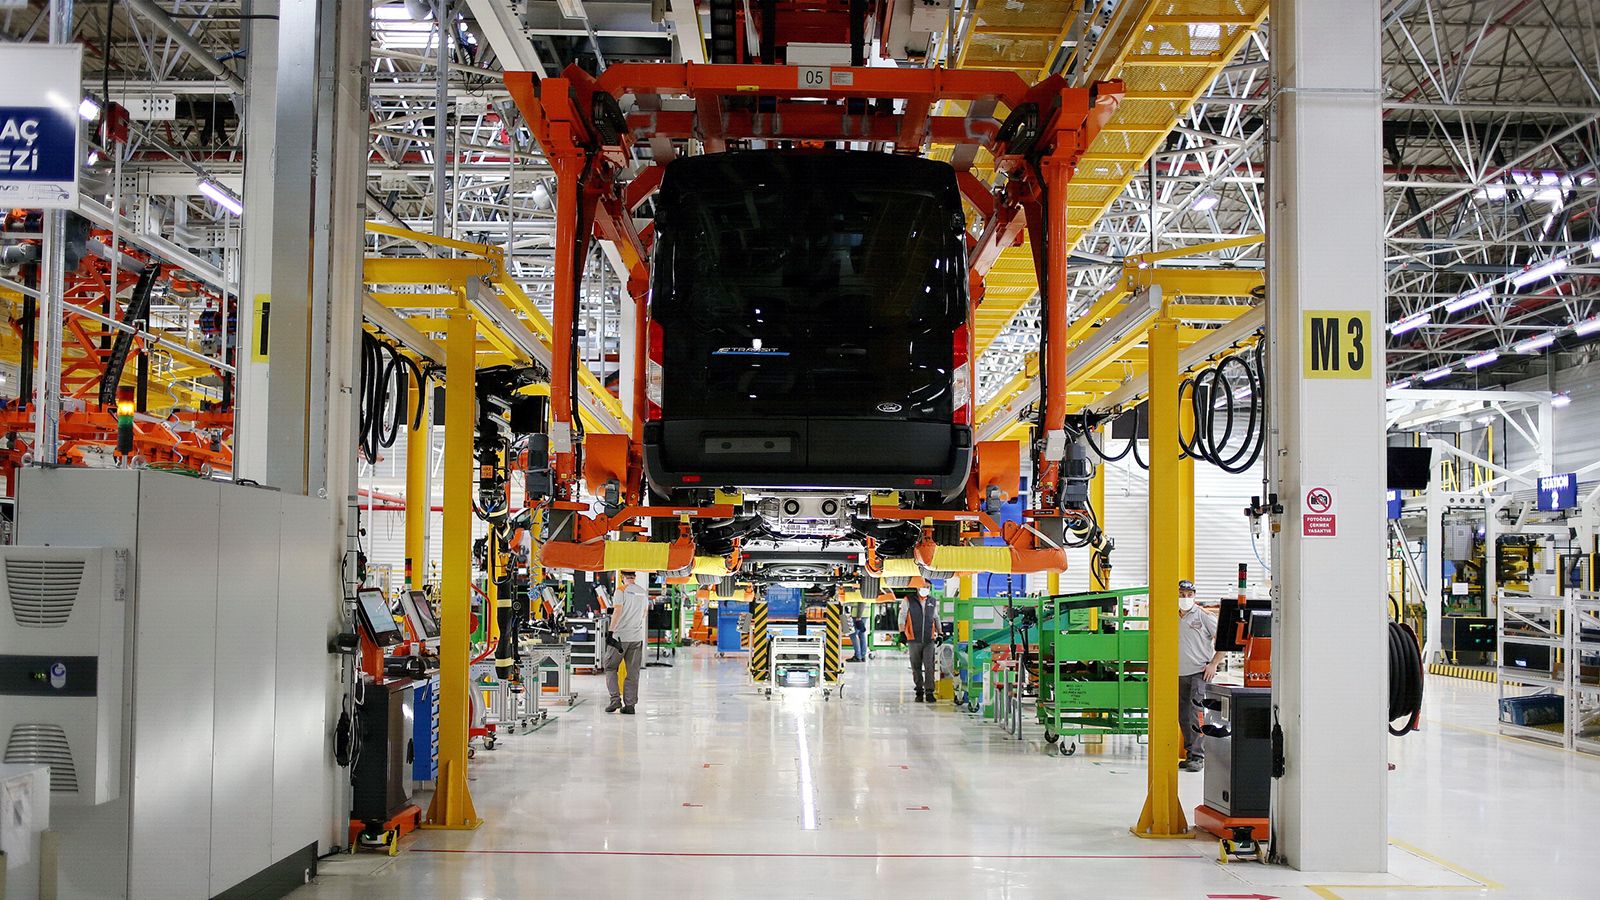 Προκειμένου να ανταποκριθεί στη ζήτηση για μελλοντικά ηλεκτρικά μοντέλα της Ford, η Ford Otosan επενδύει στη μονάδα 2 δισ. ευρώ και αυξάνει το ανθρώπινο δυναμικό κατά 3.000 εργαζομένους.